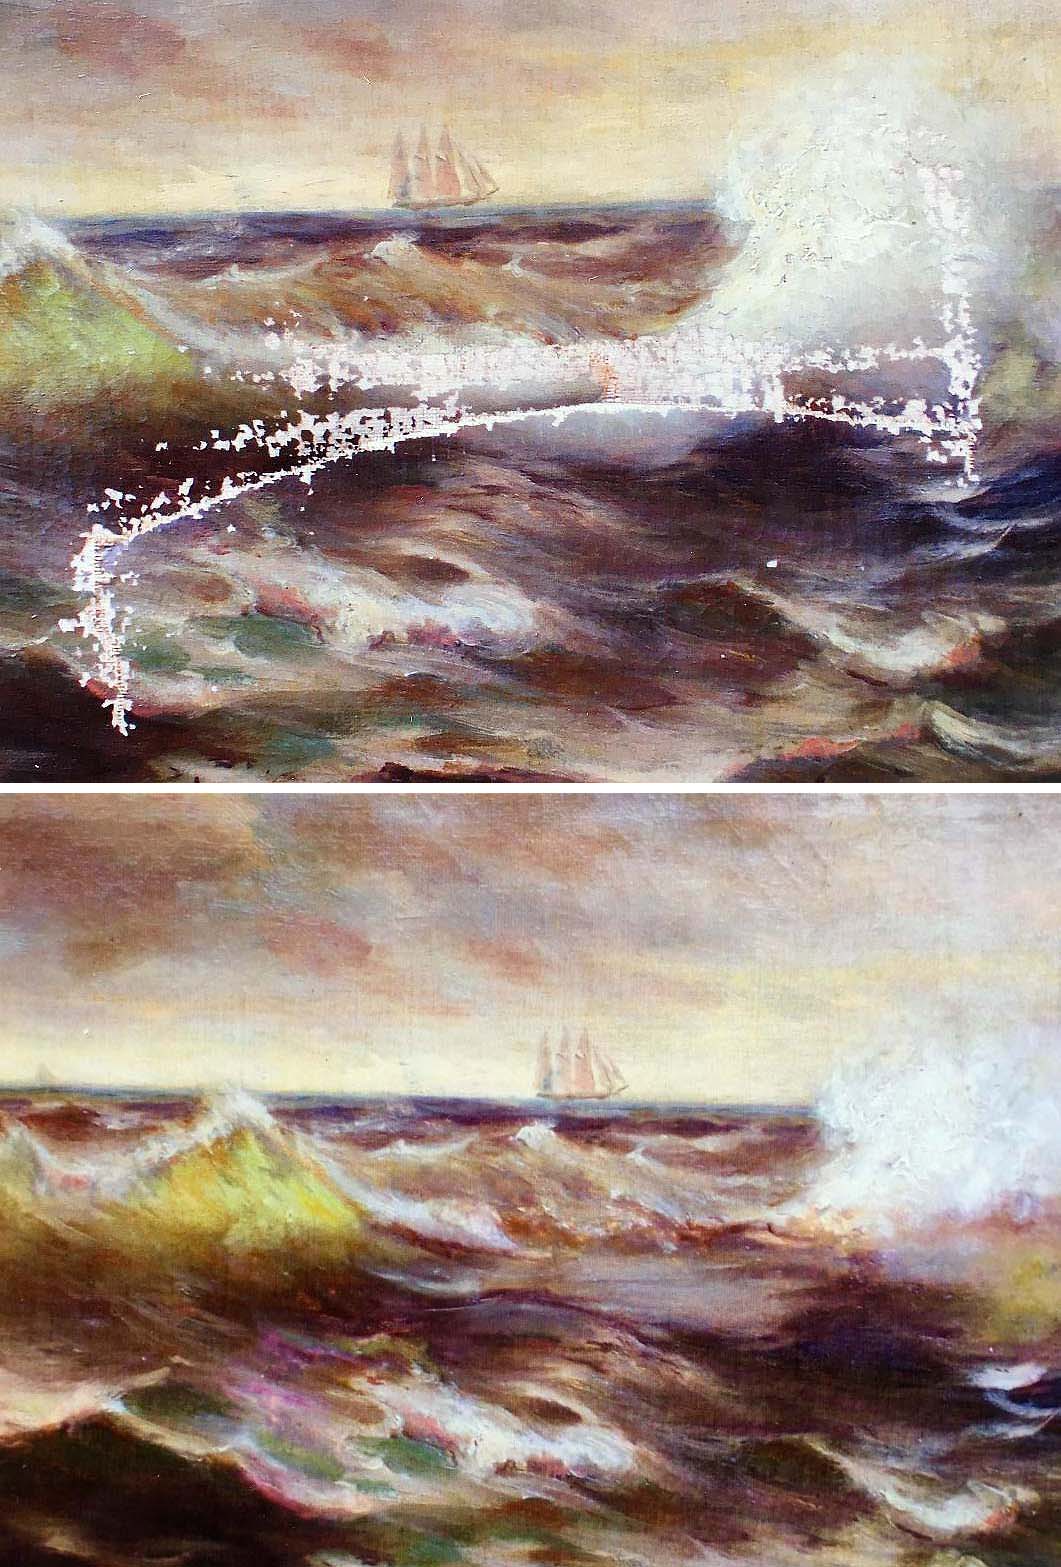 Two paintings of a bridge in the ocean